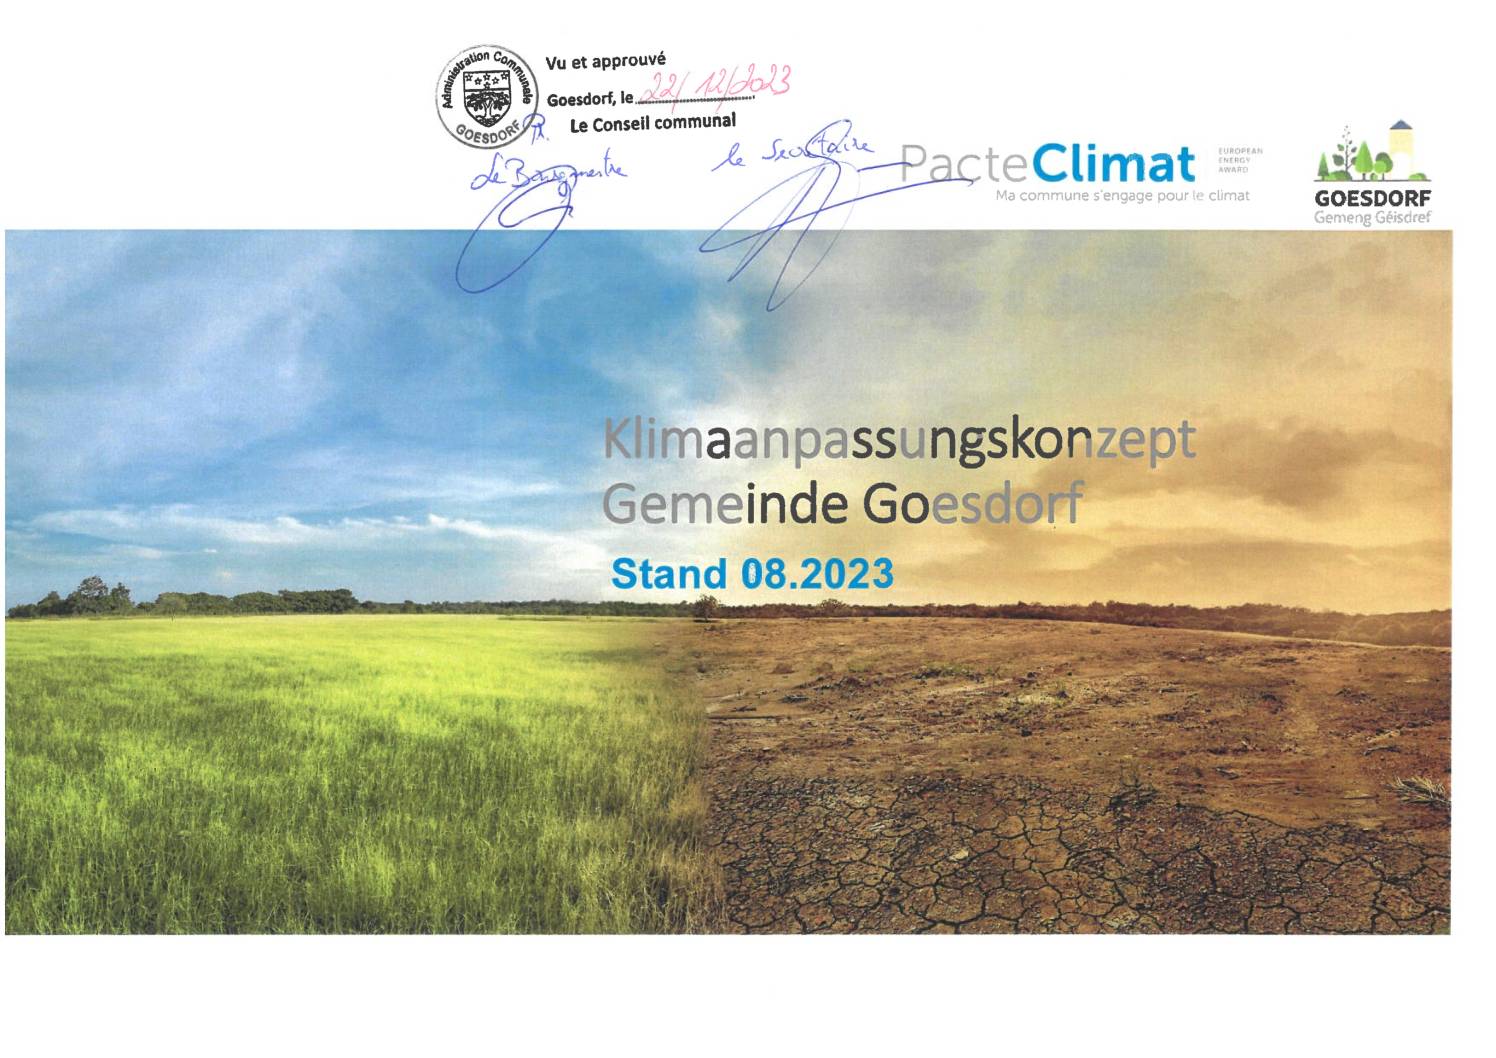 Klimaanpassungskonzept_Gemeinde Goesdorf_Accord CC 22 12 2023